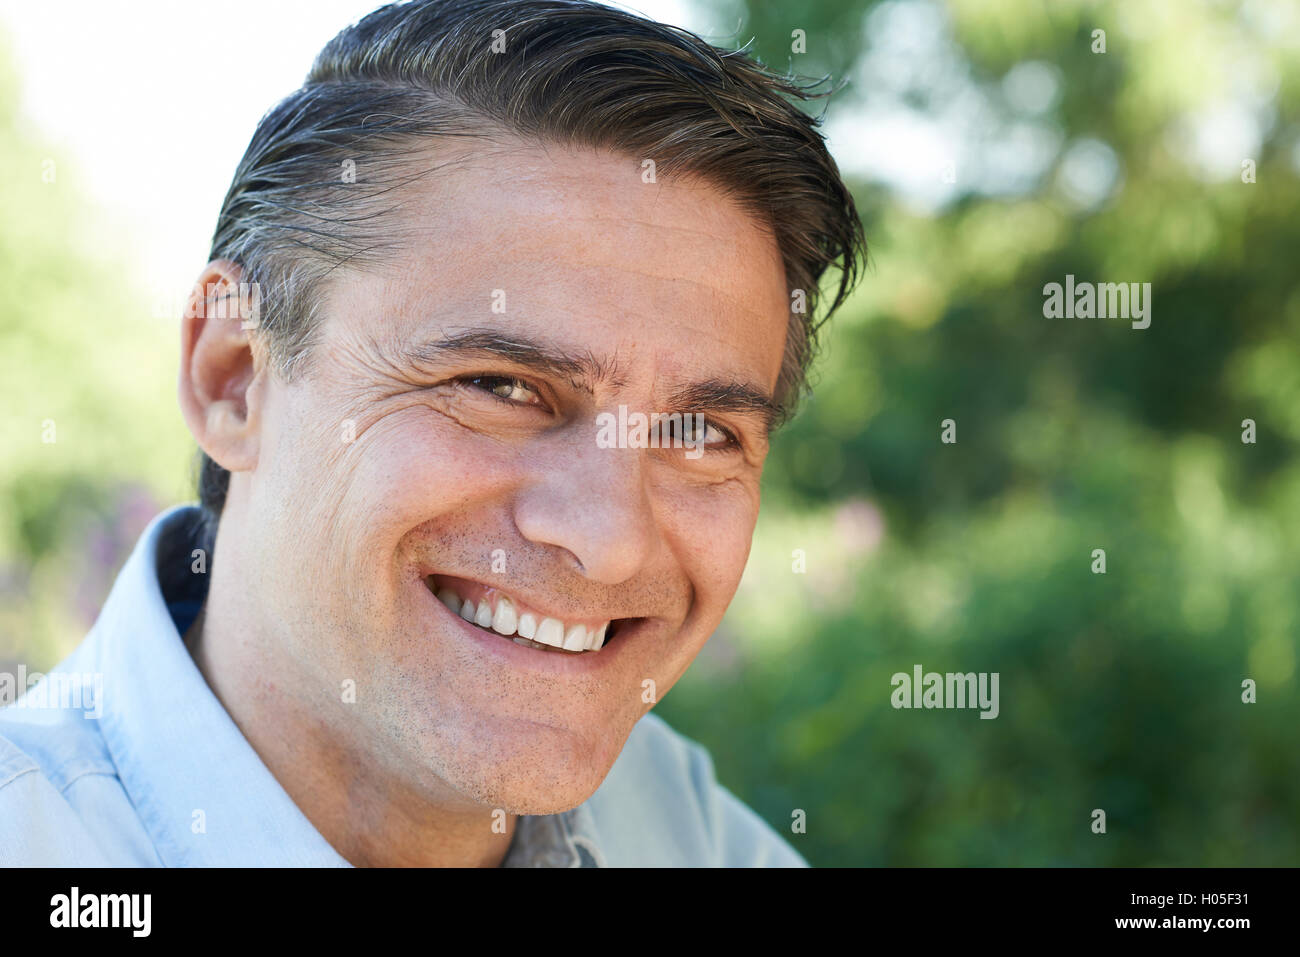 Im freien Kopf und Schultern Portrait Of Smiling reifen Mann Stockfoto